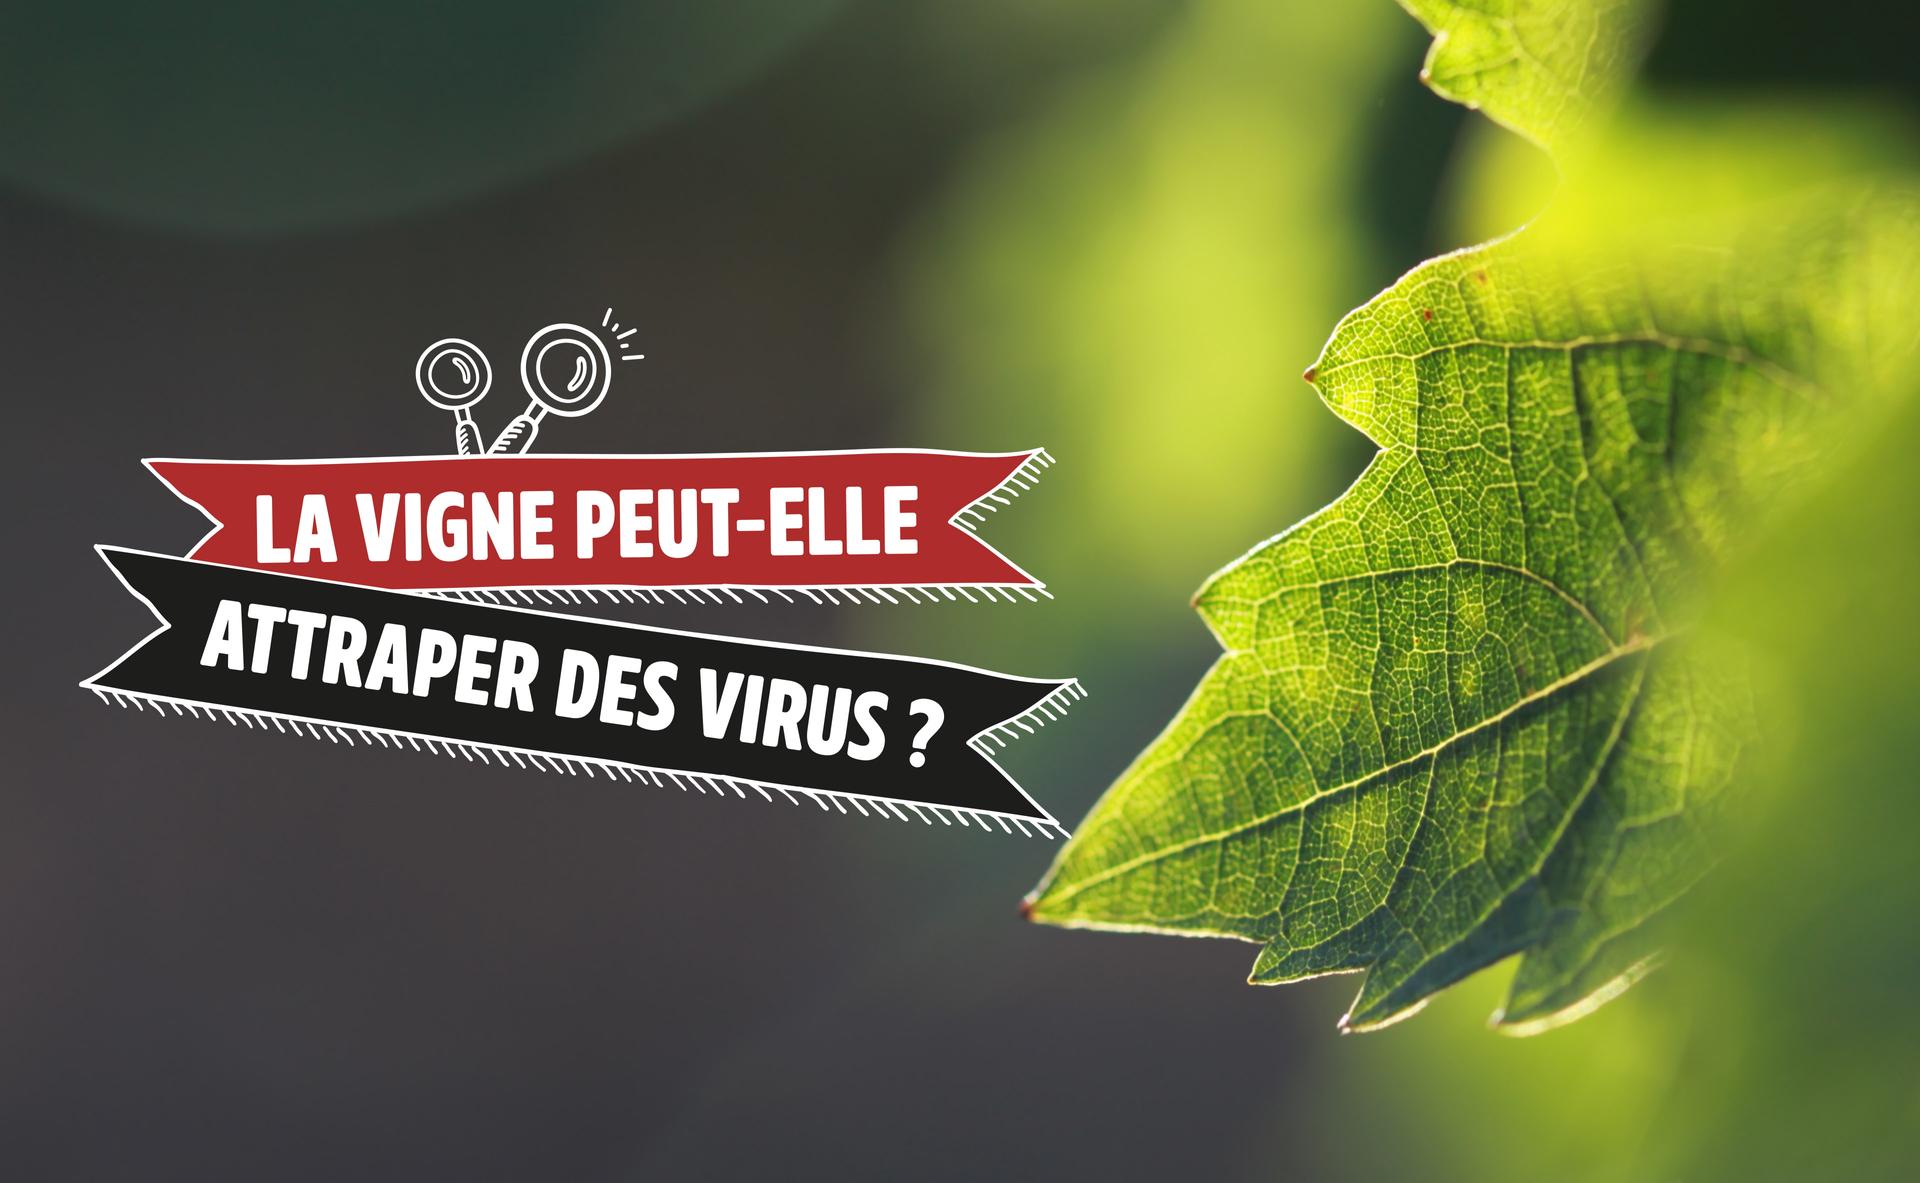 La vigne peut-elle attraper des virus ?